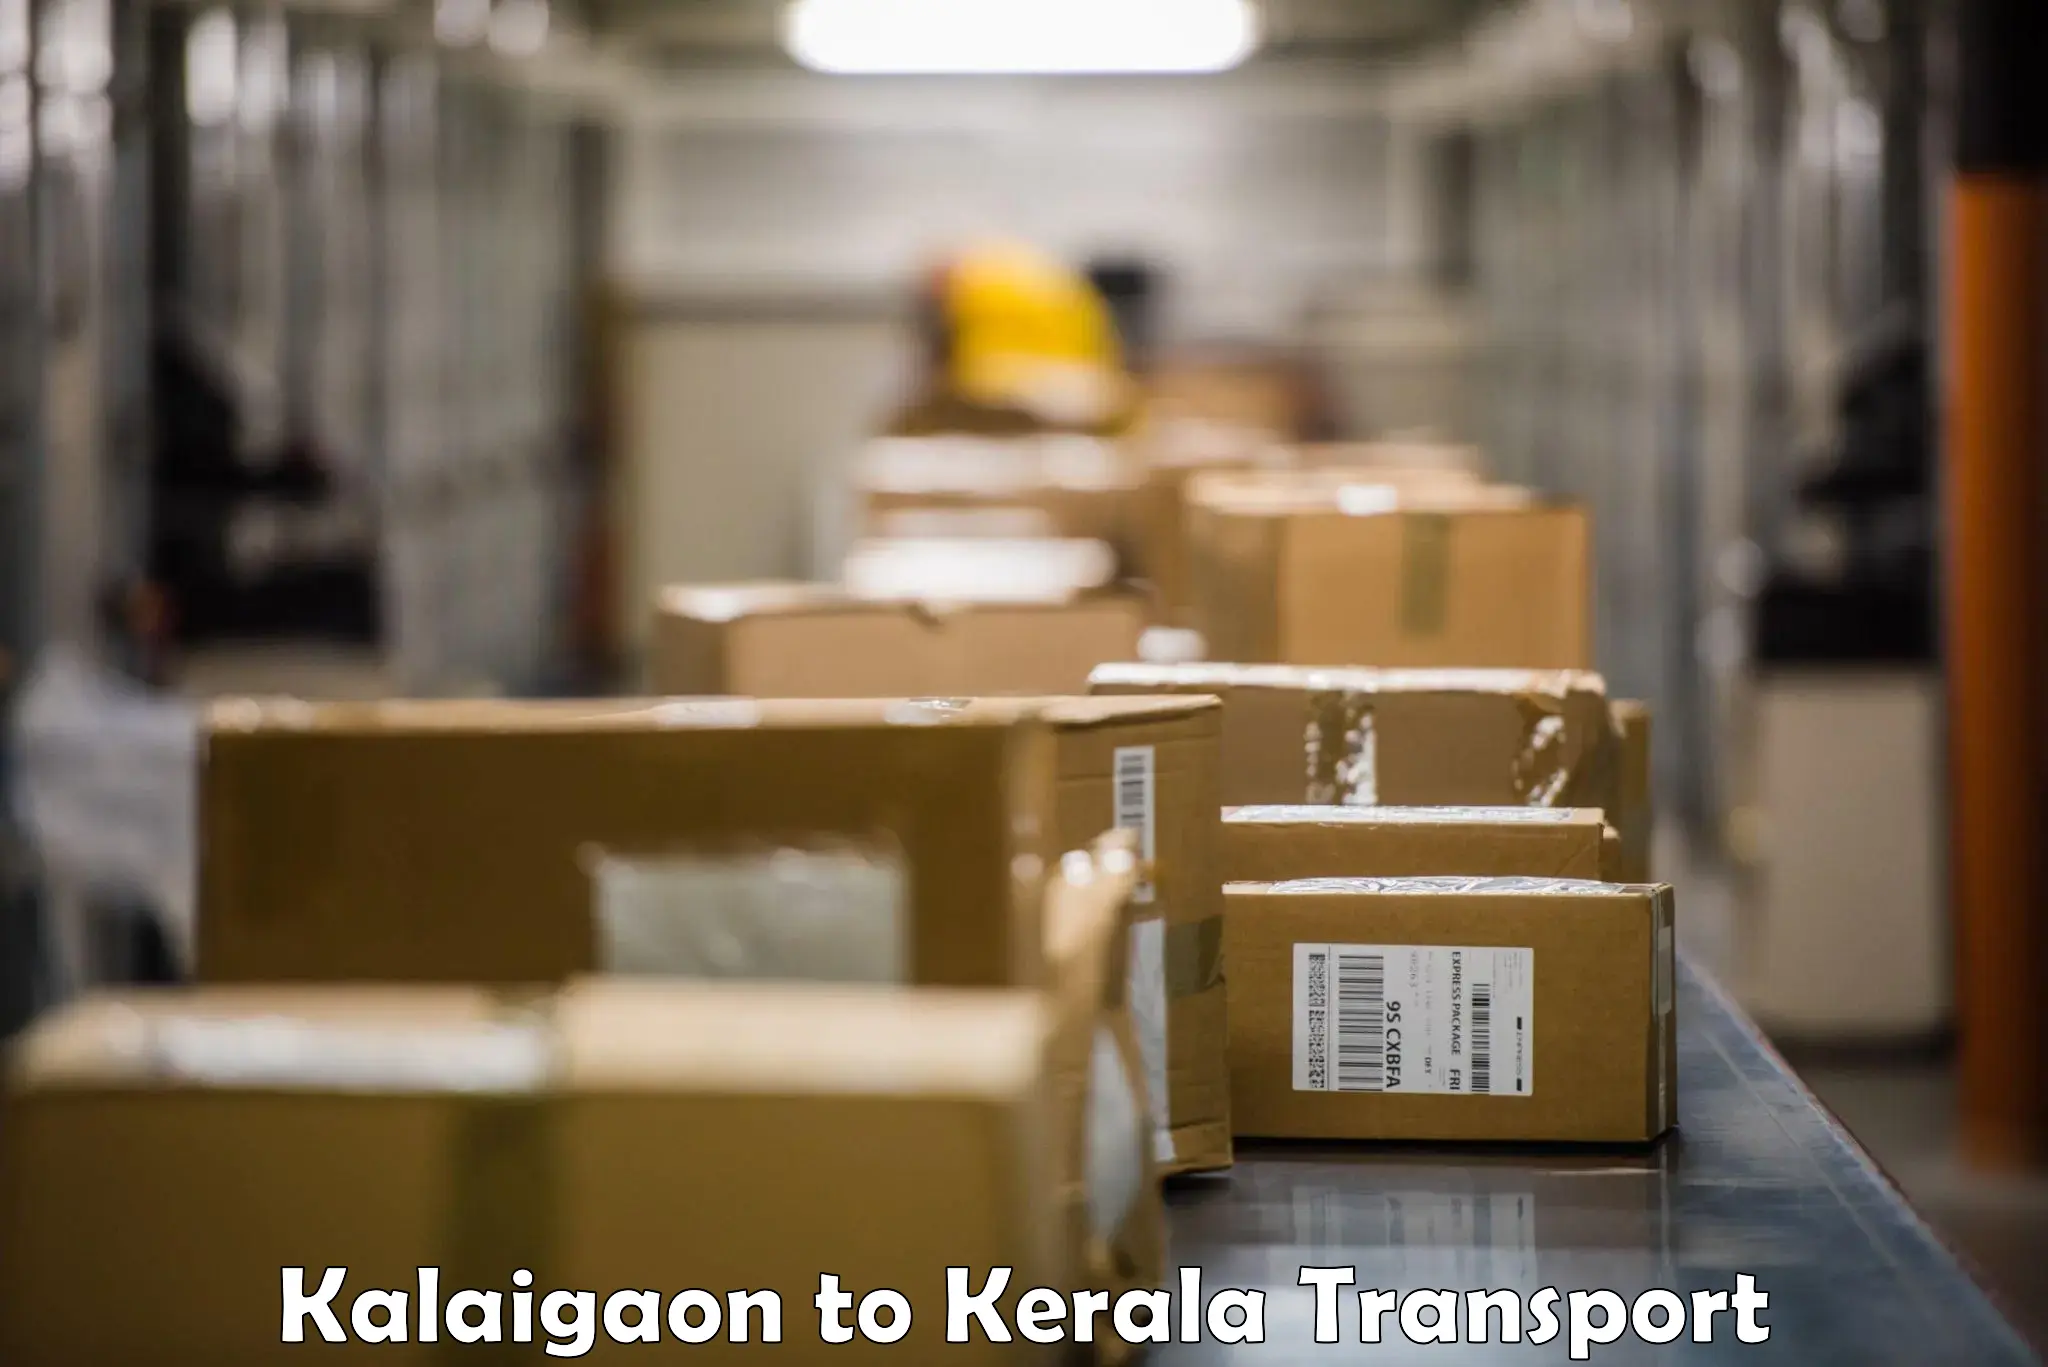 Nearby transport service Kalaigaon to Haripad